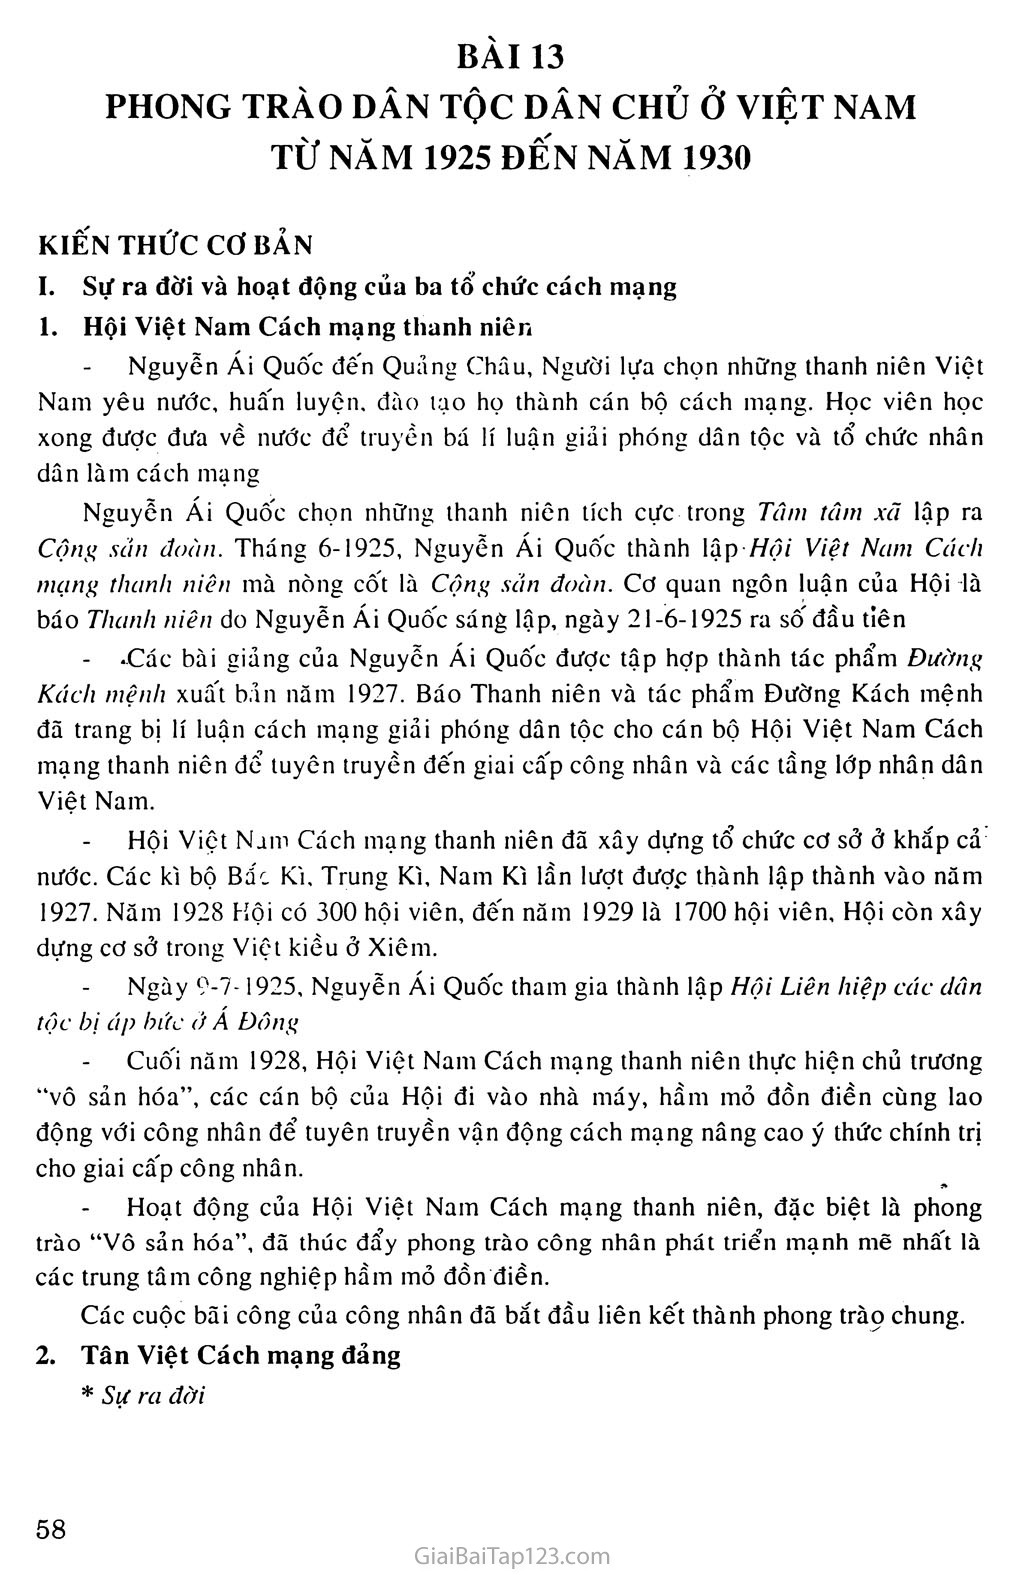 Bài 13.: Phong trào dân tộc dân chủ ở Việt Nam từ năm 1925 đến năm 1930 trang 1